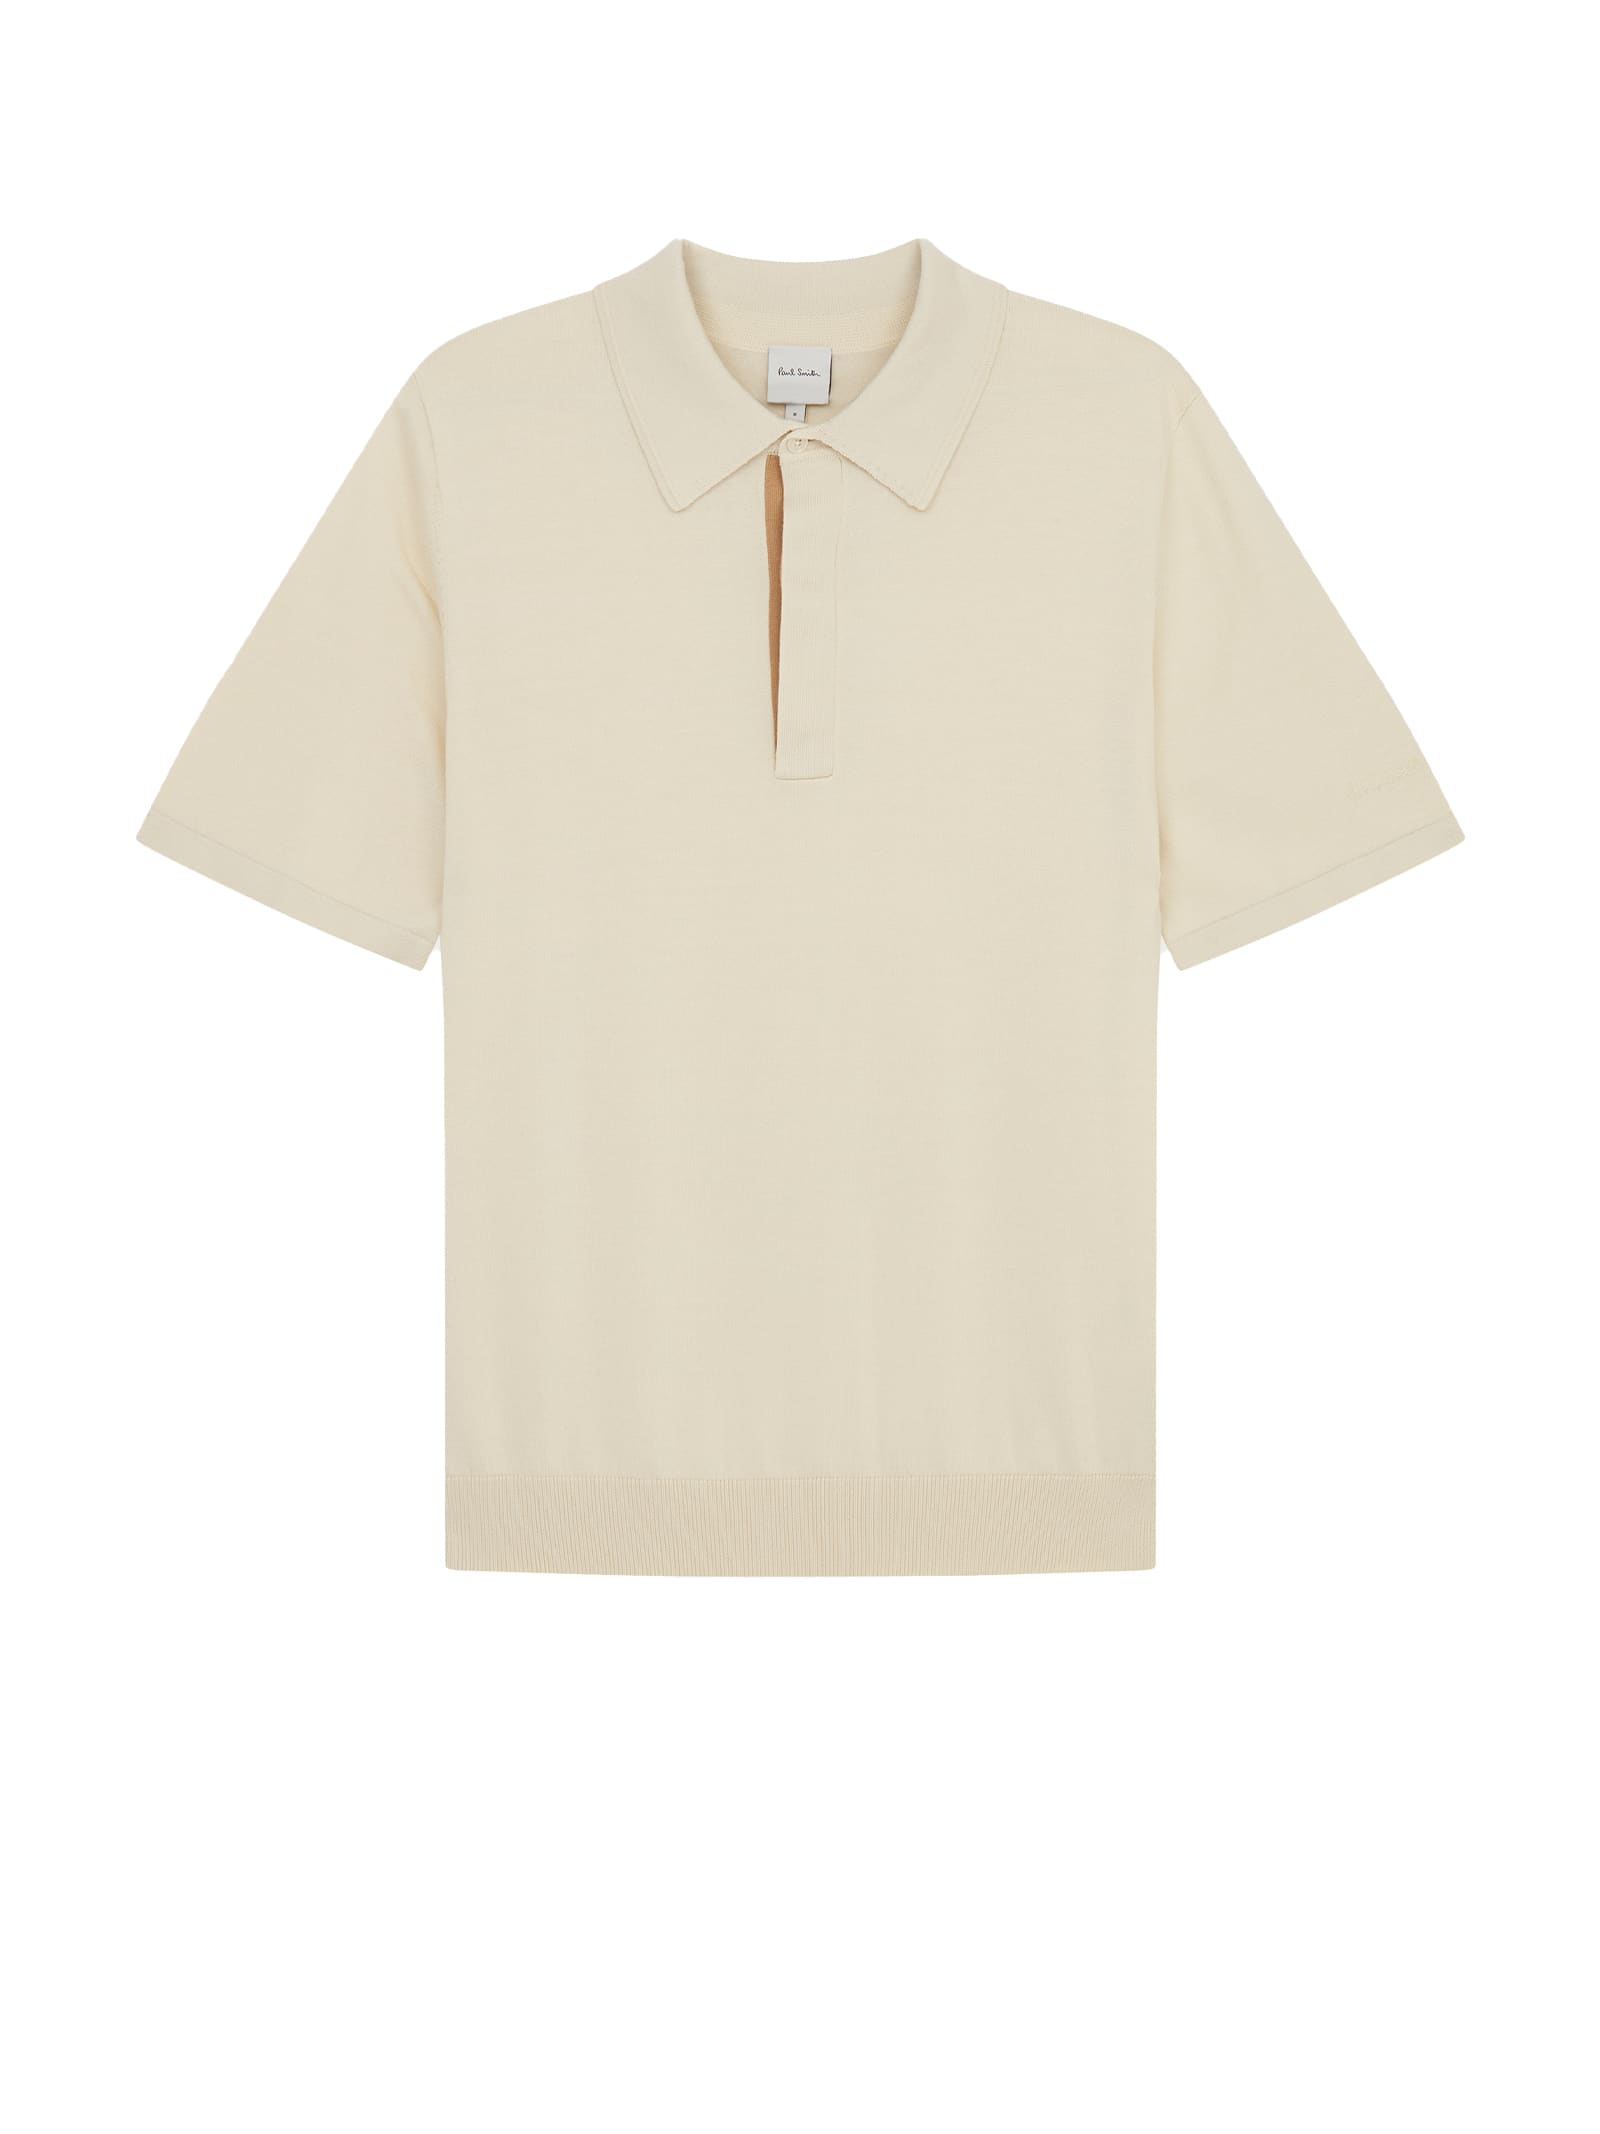 White Short-sleeved Polo Shirt